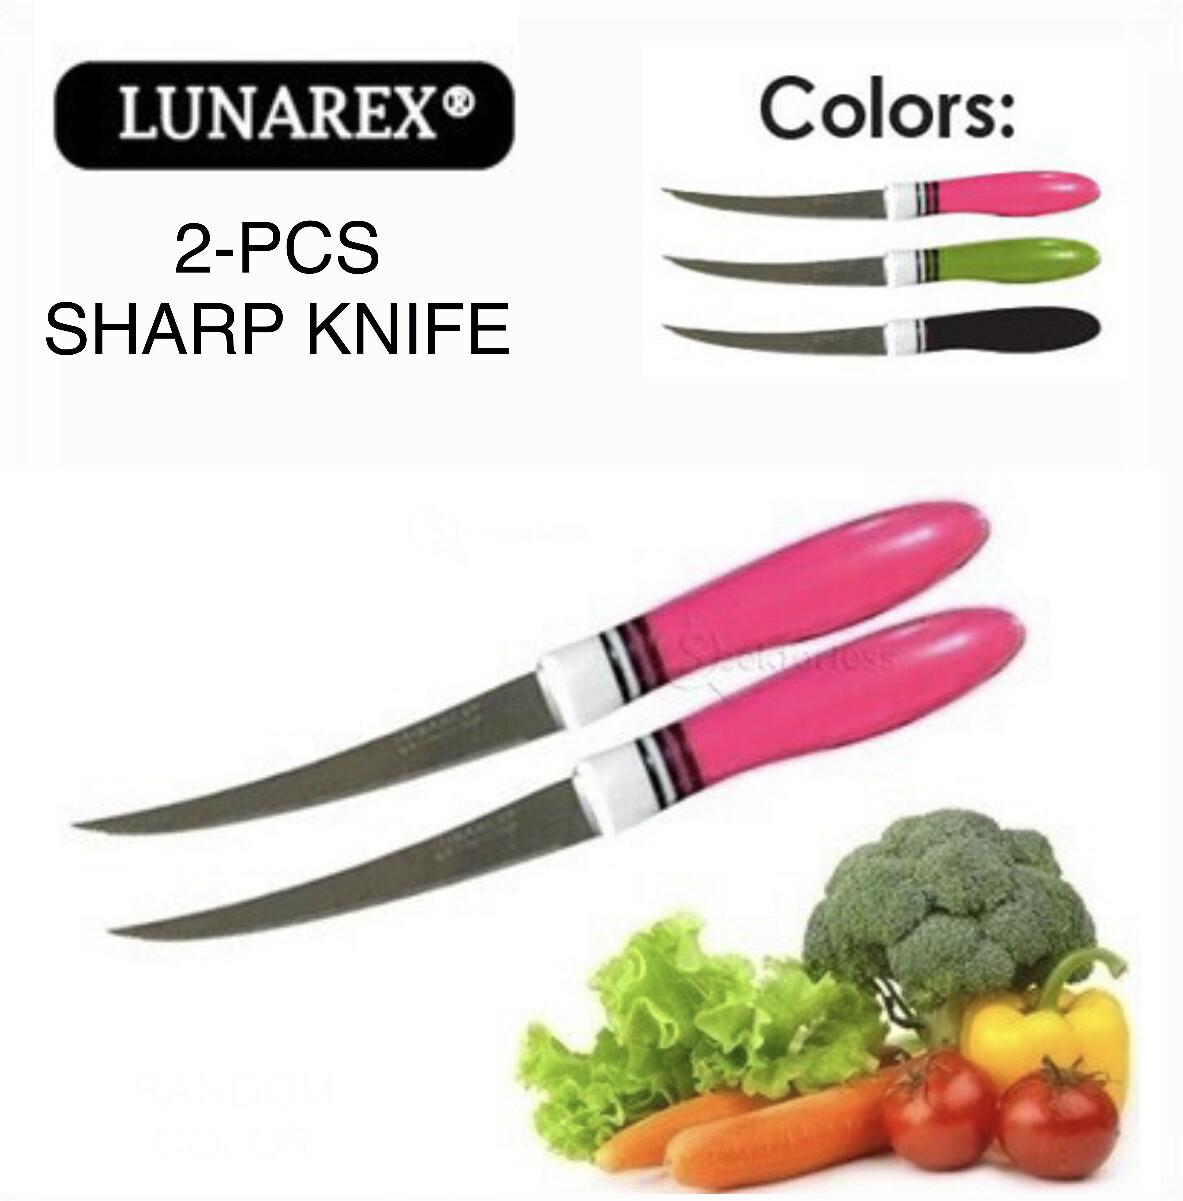 2-Pcs Knife Set